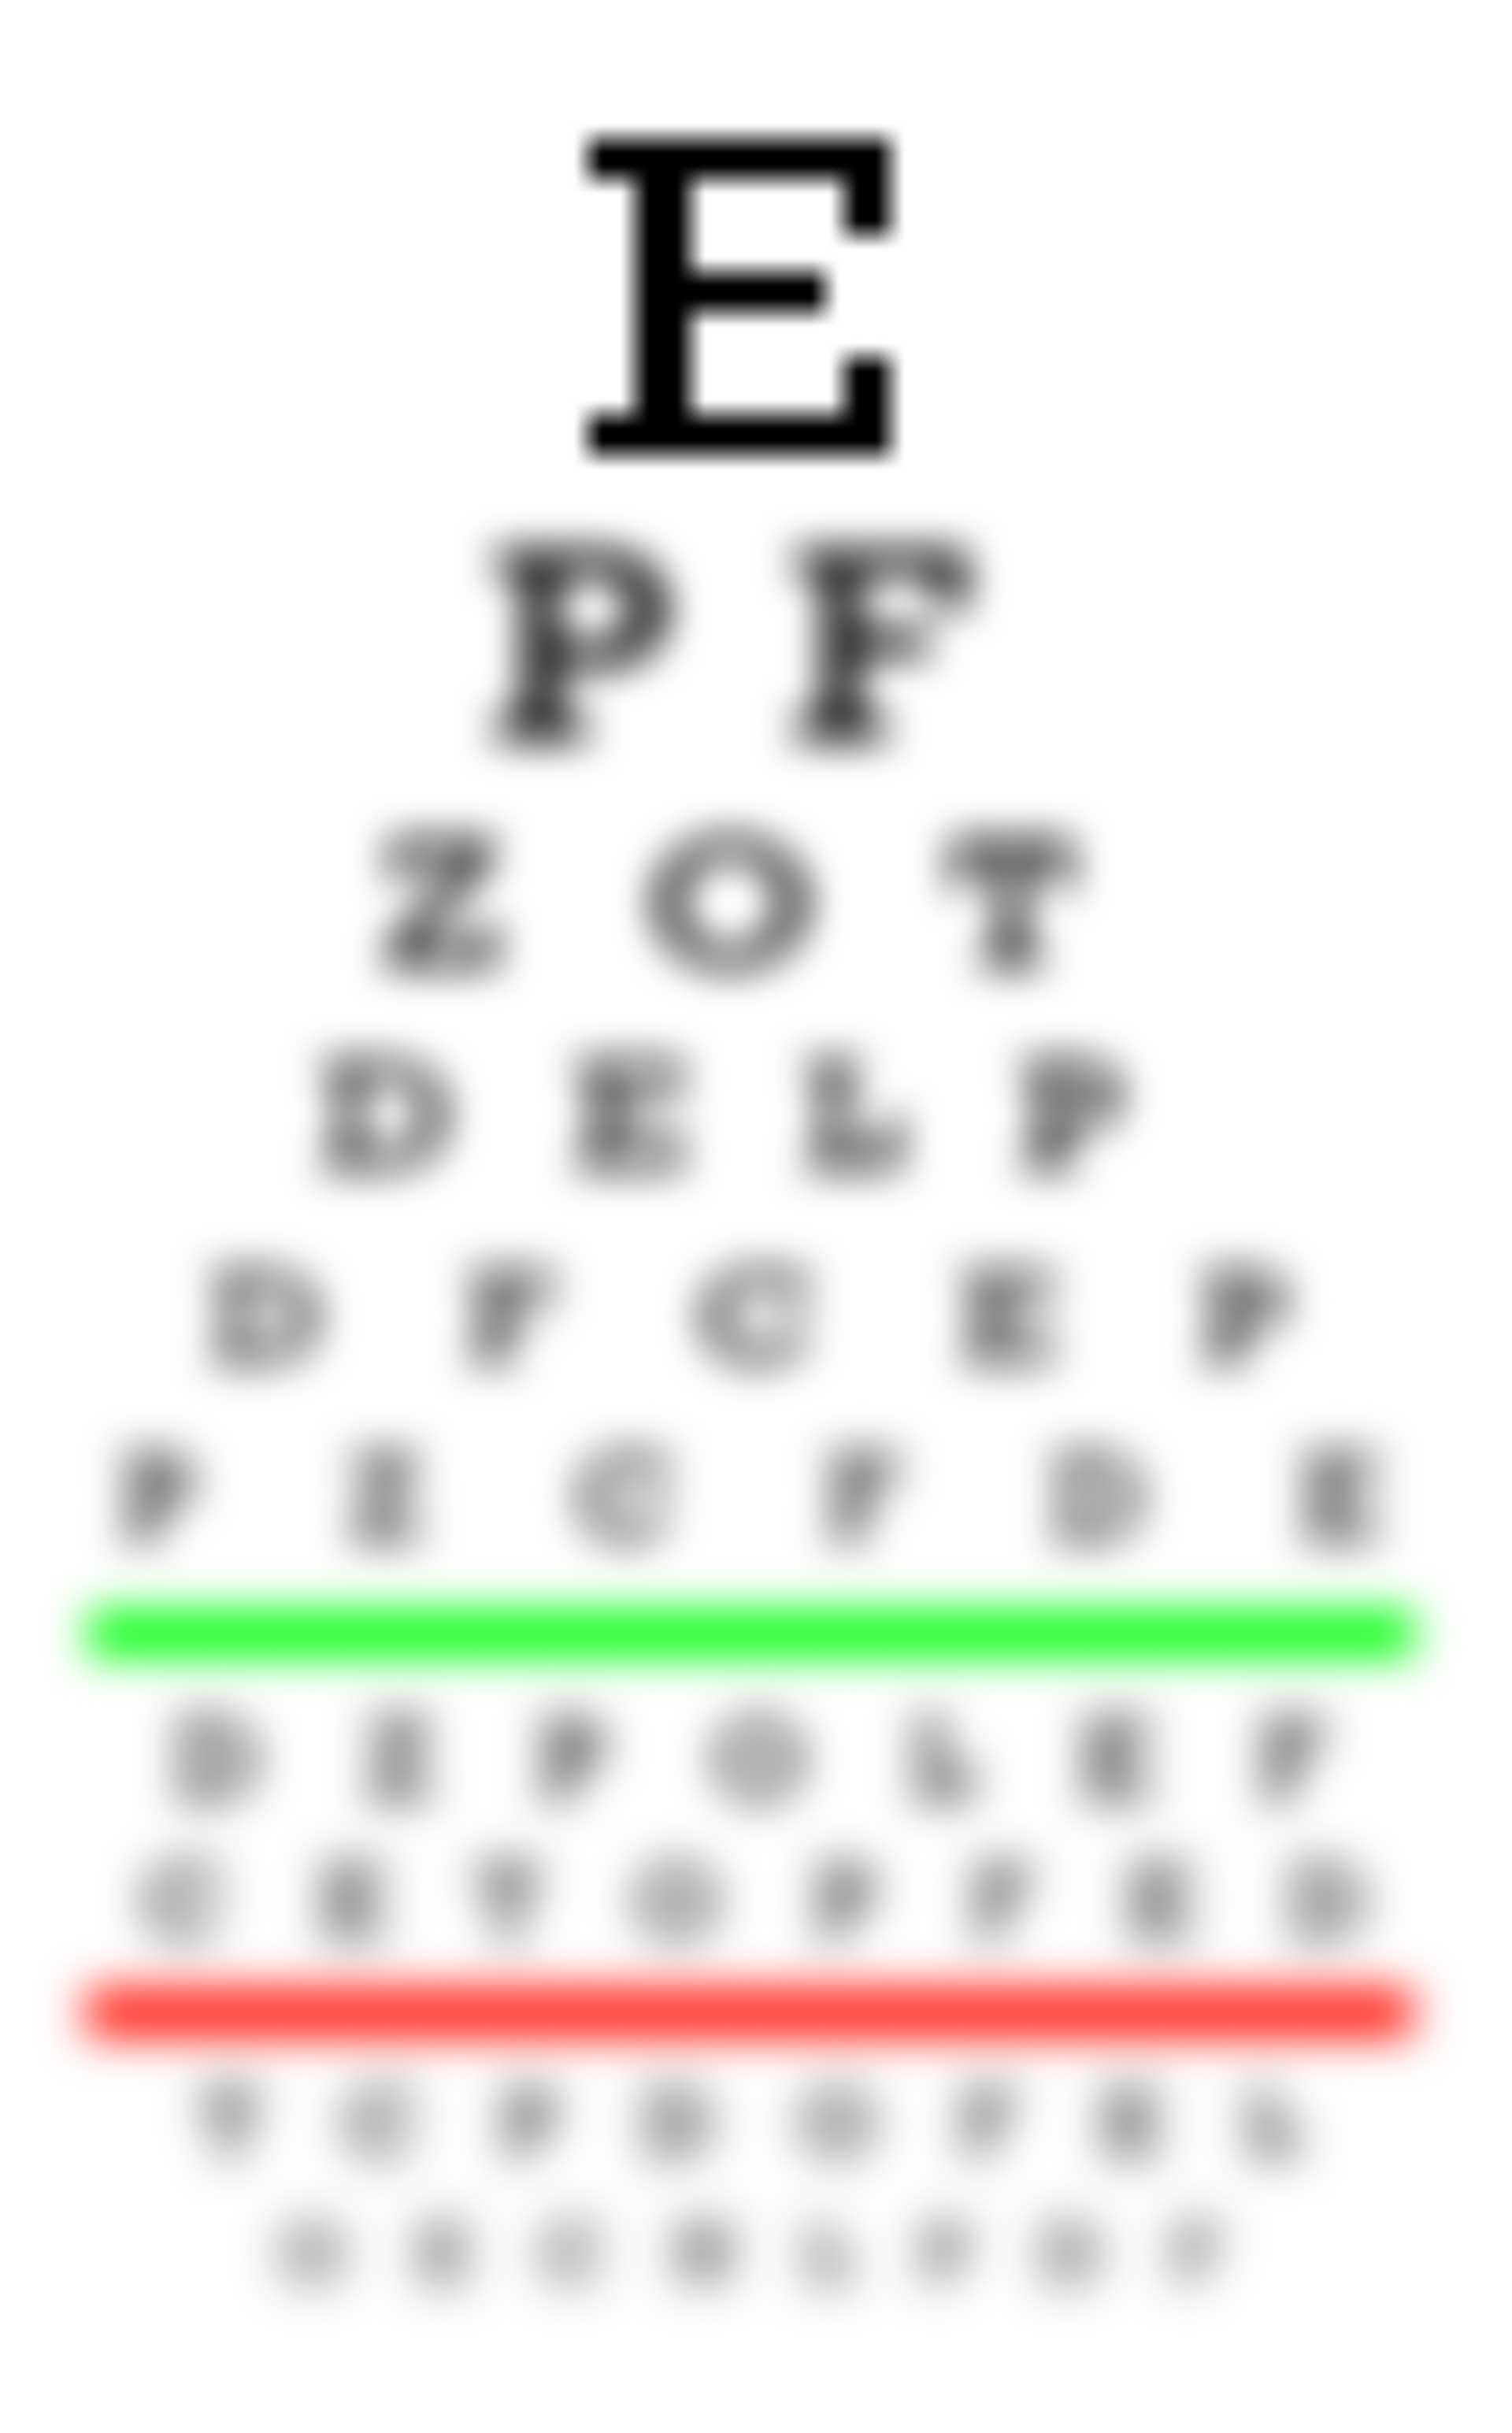 hyperopia és myopia kontraszt táblázat